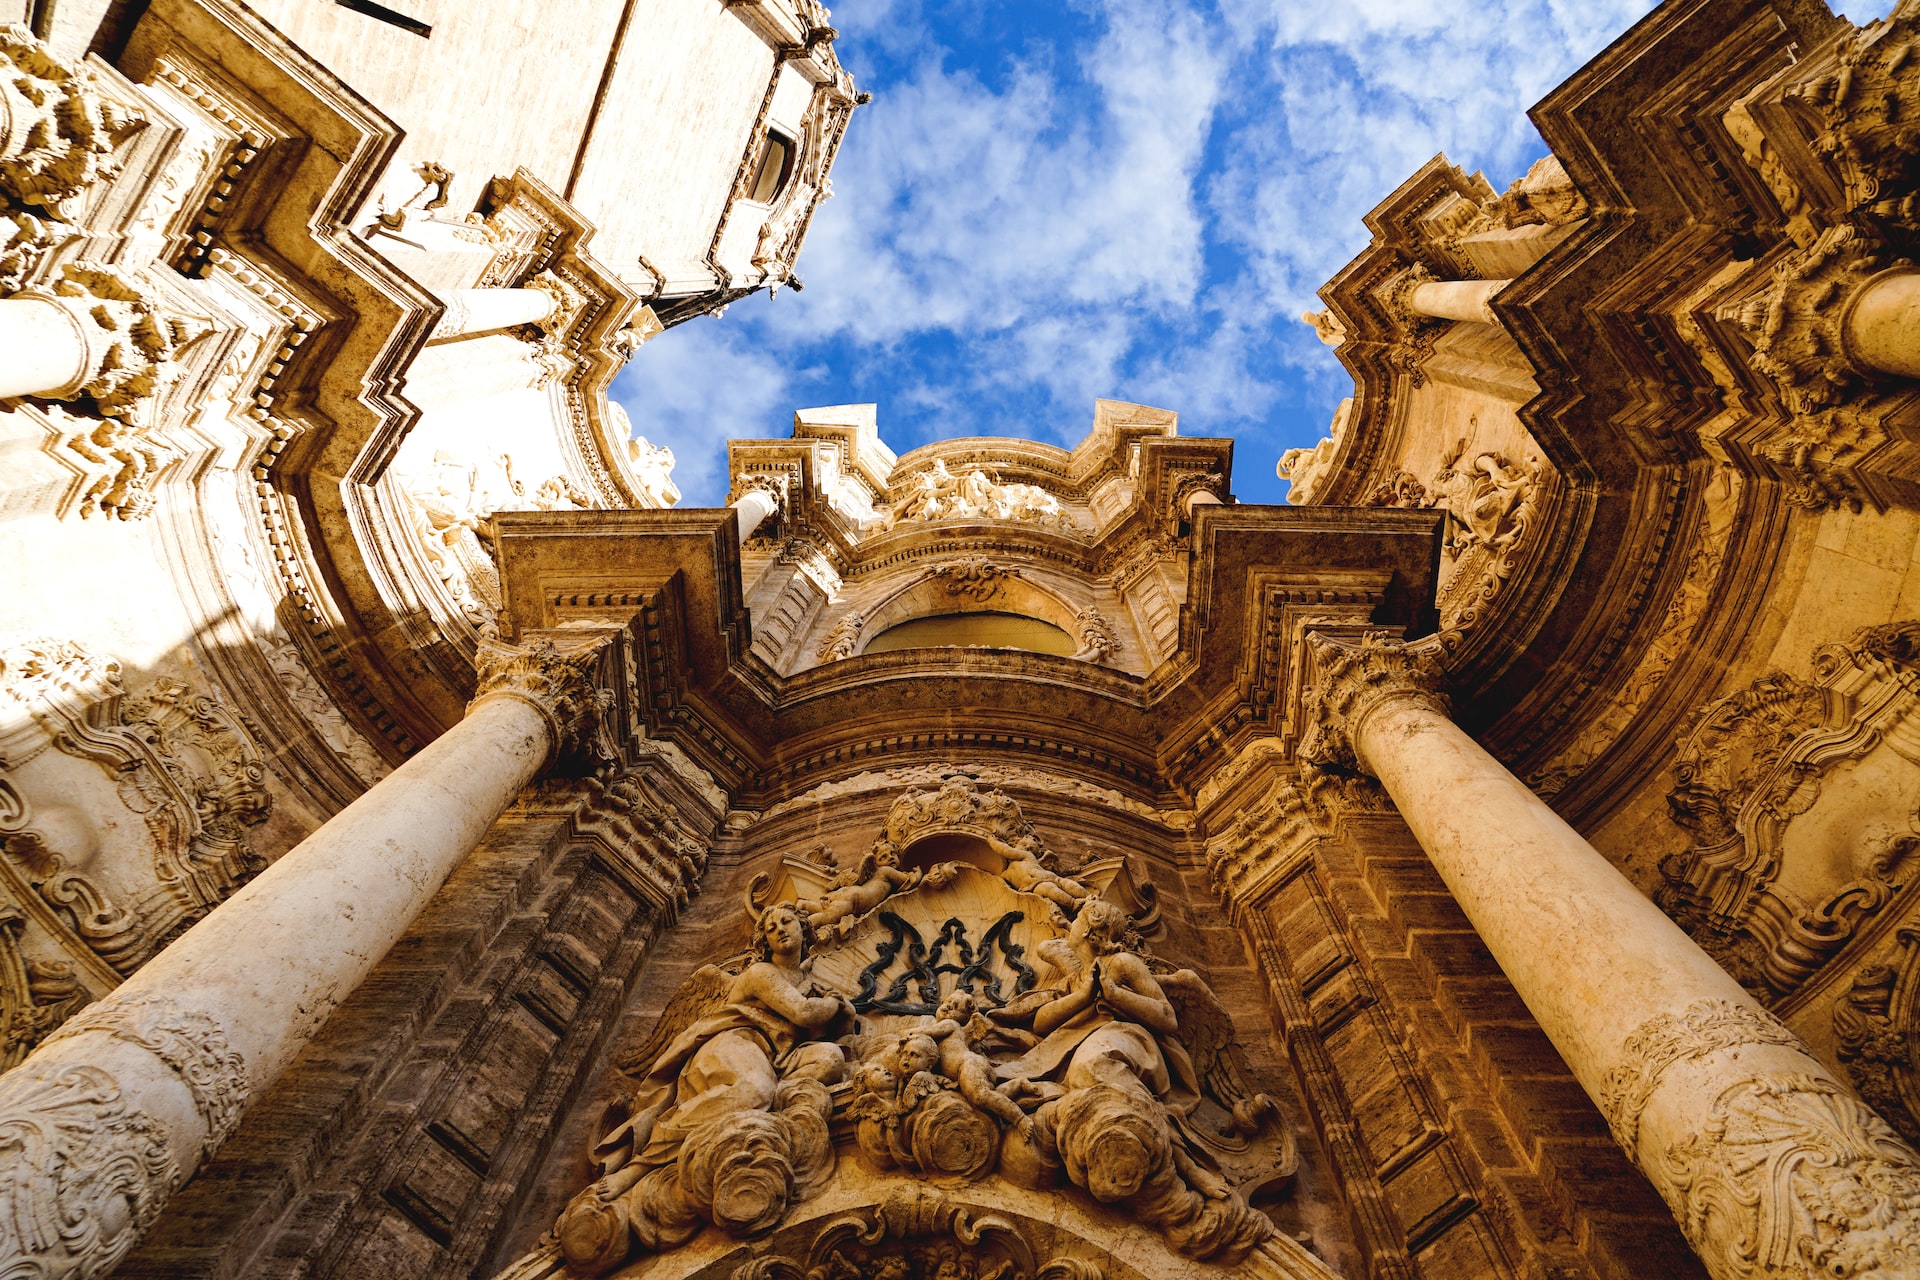 A brilliant sunny day illuminating some stone architecture in Valencia, Spain.